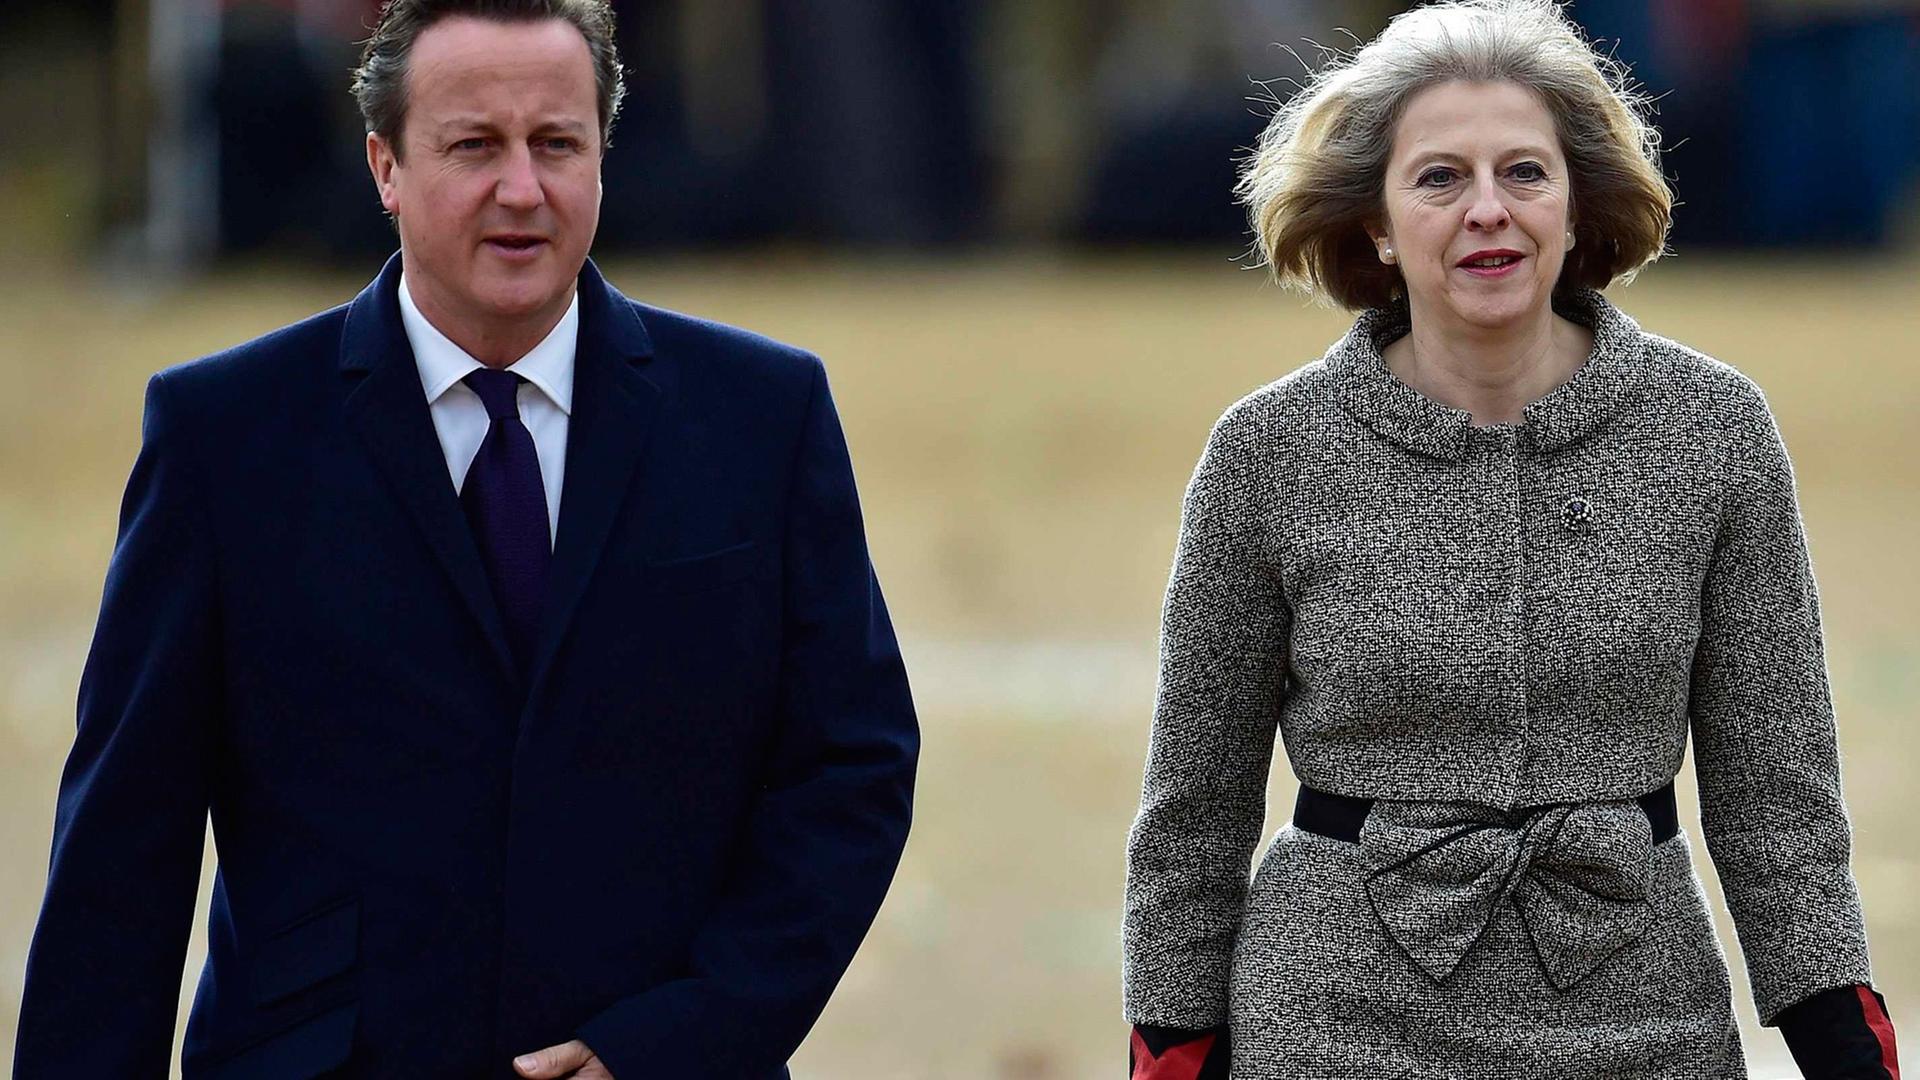 Großbritanniens Premierminister David Cameron und Innenministerin Theresa May laufen auf die Kamera zu.